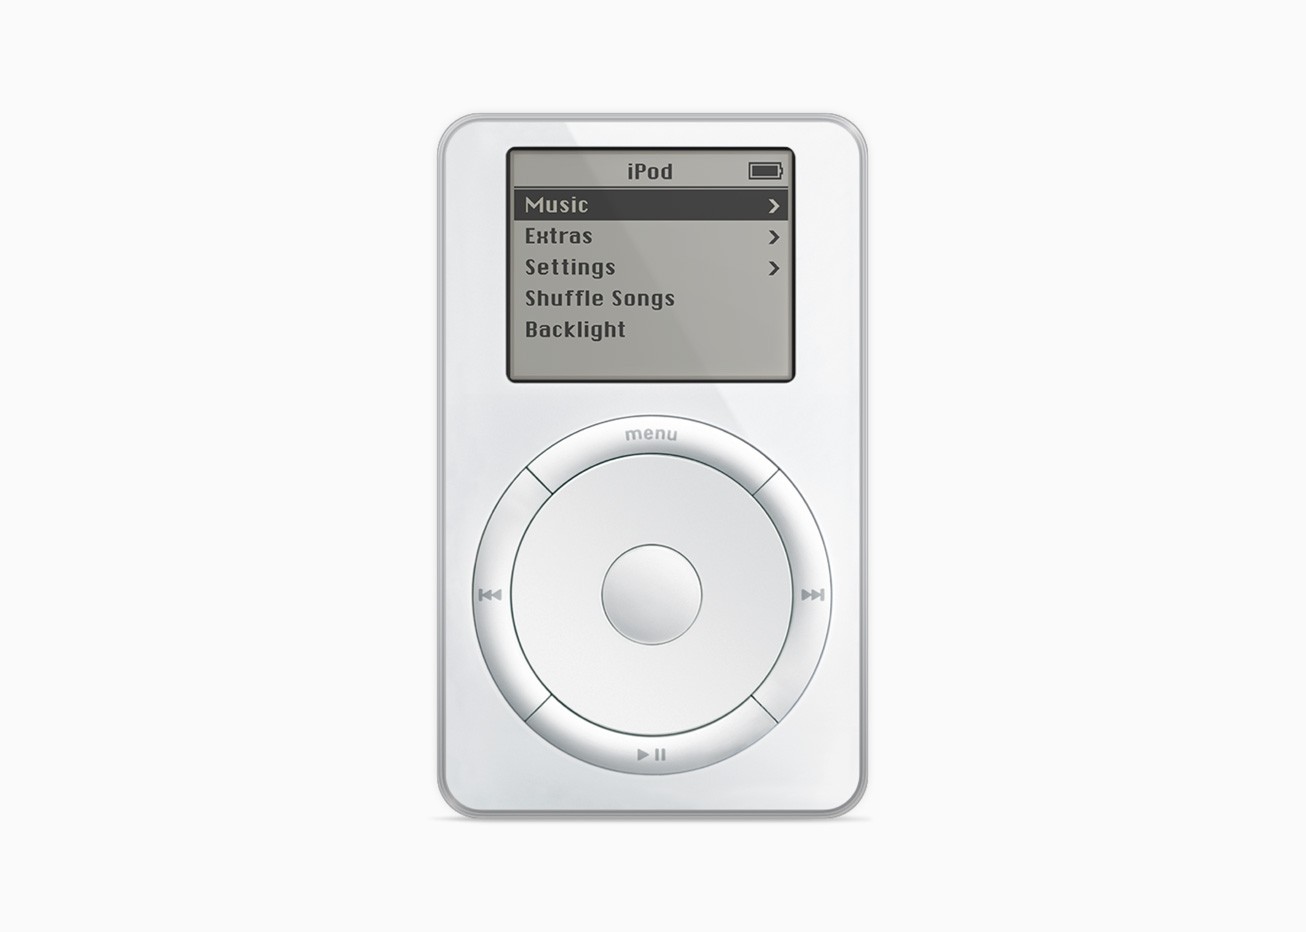 Pierwszy iPod wystawiony na aukcji za niebotyczne pieniądze. Czy to jeszcze nostalgia, czy już szaleństwo?